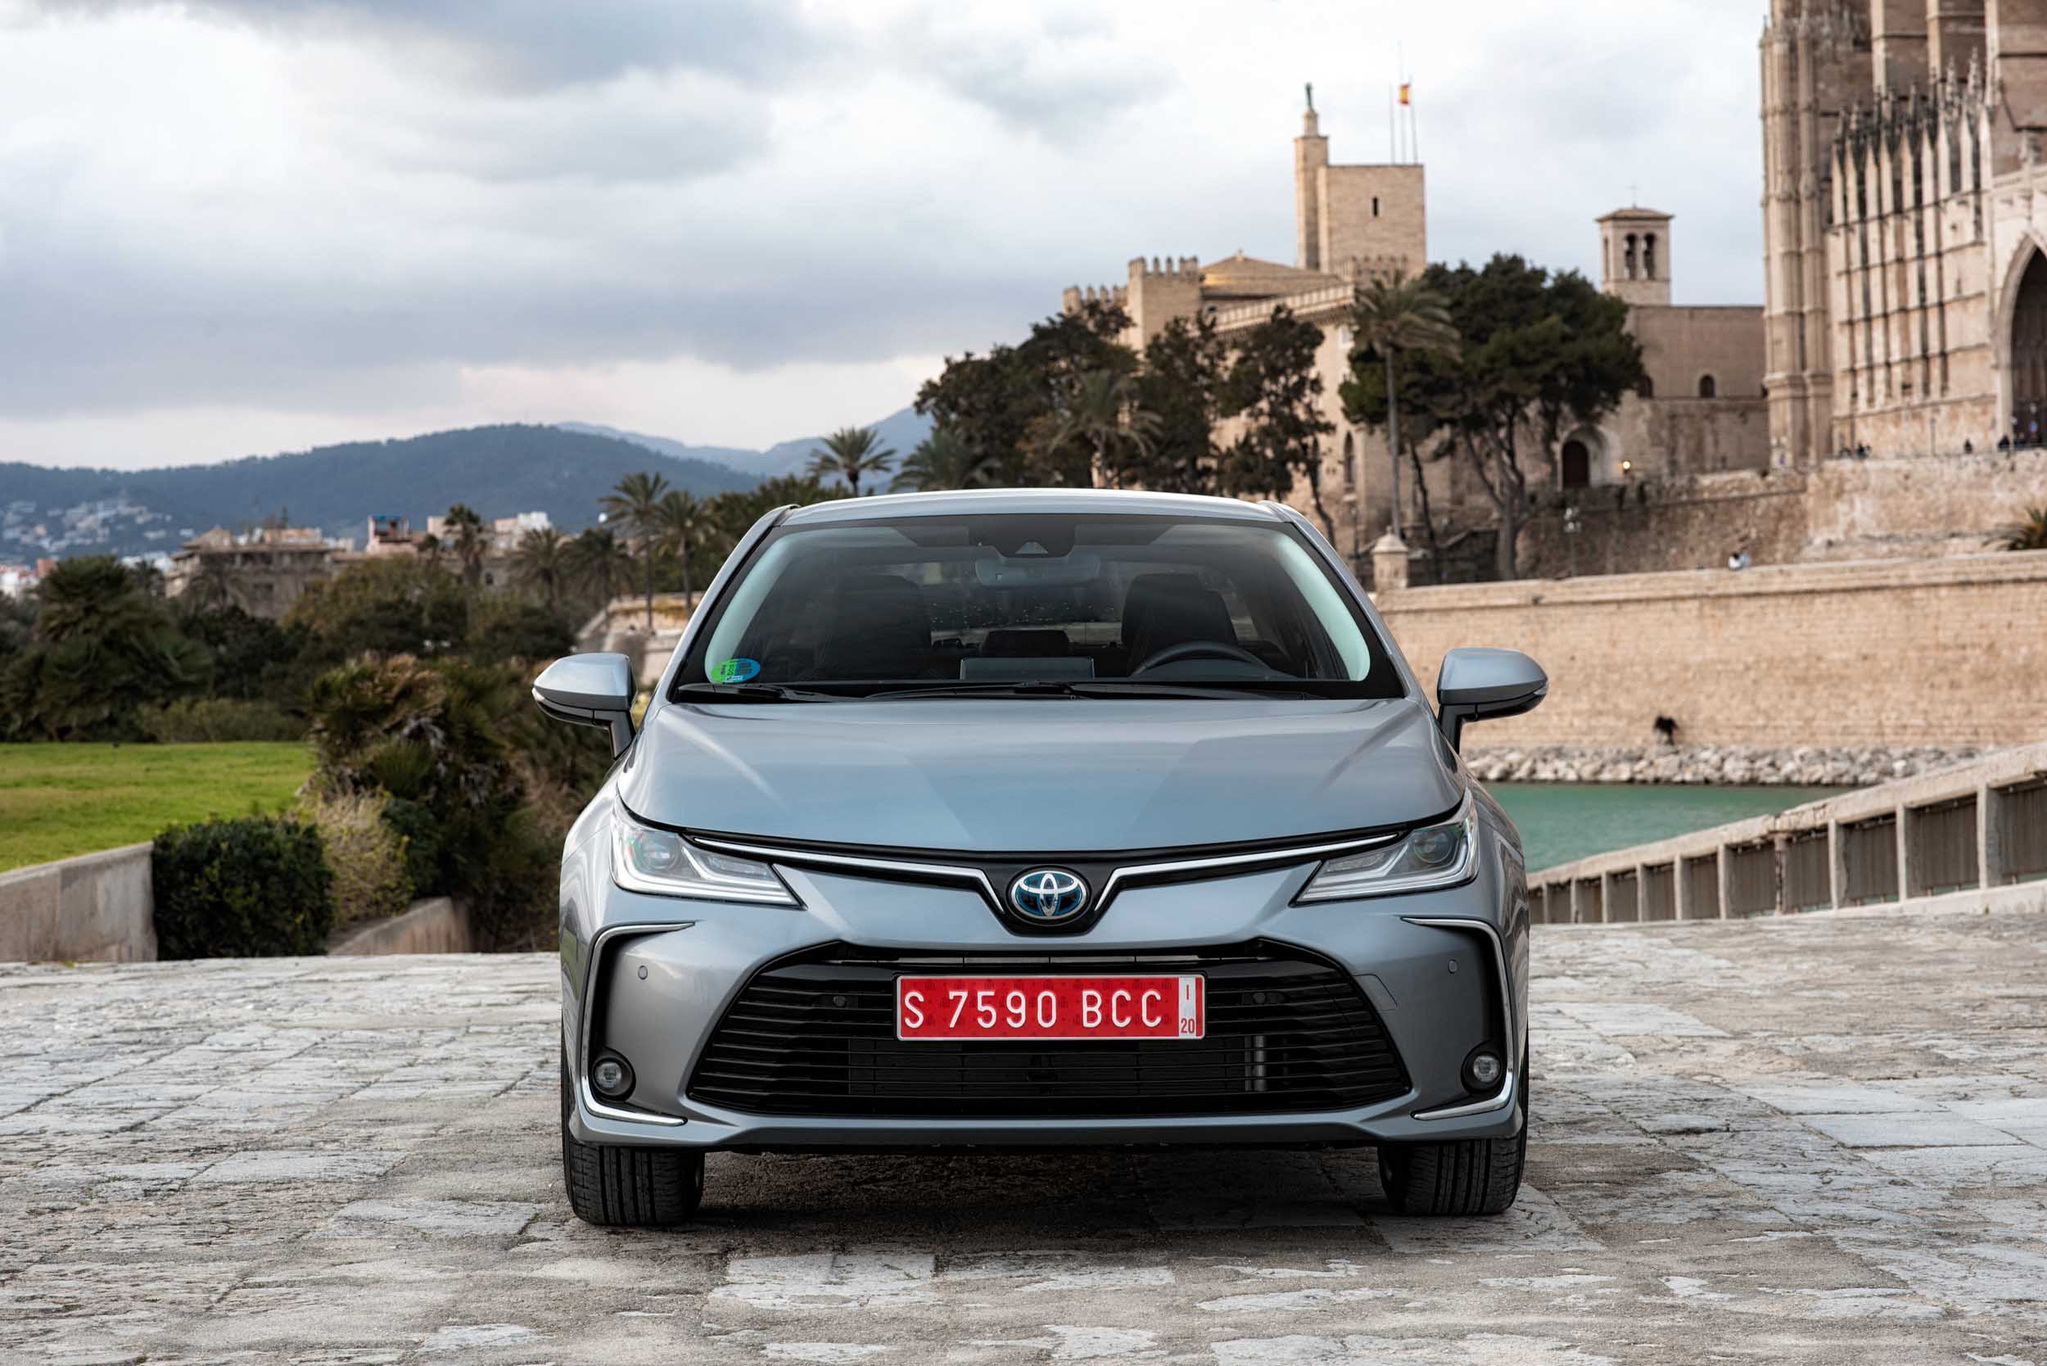 Toyota hibrit Corolla'nın fiyatını açıkladı